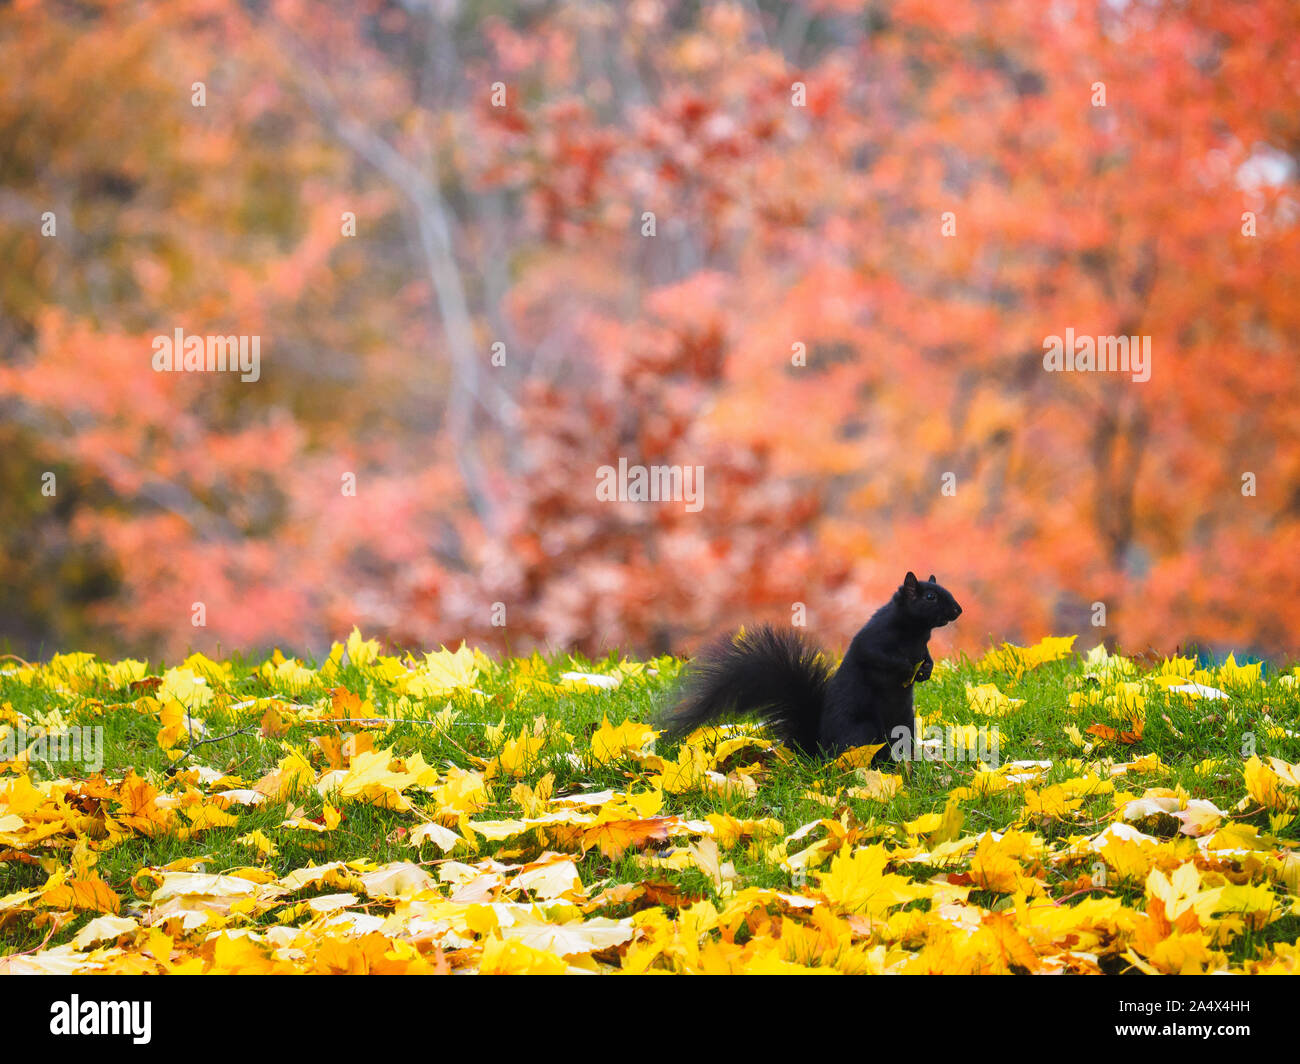 Schwarzes Eichhörnchen mit einem Blatt für die drey Bau im Herbst Farben Rot, Gelb und Grün. Stockfoto